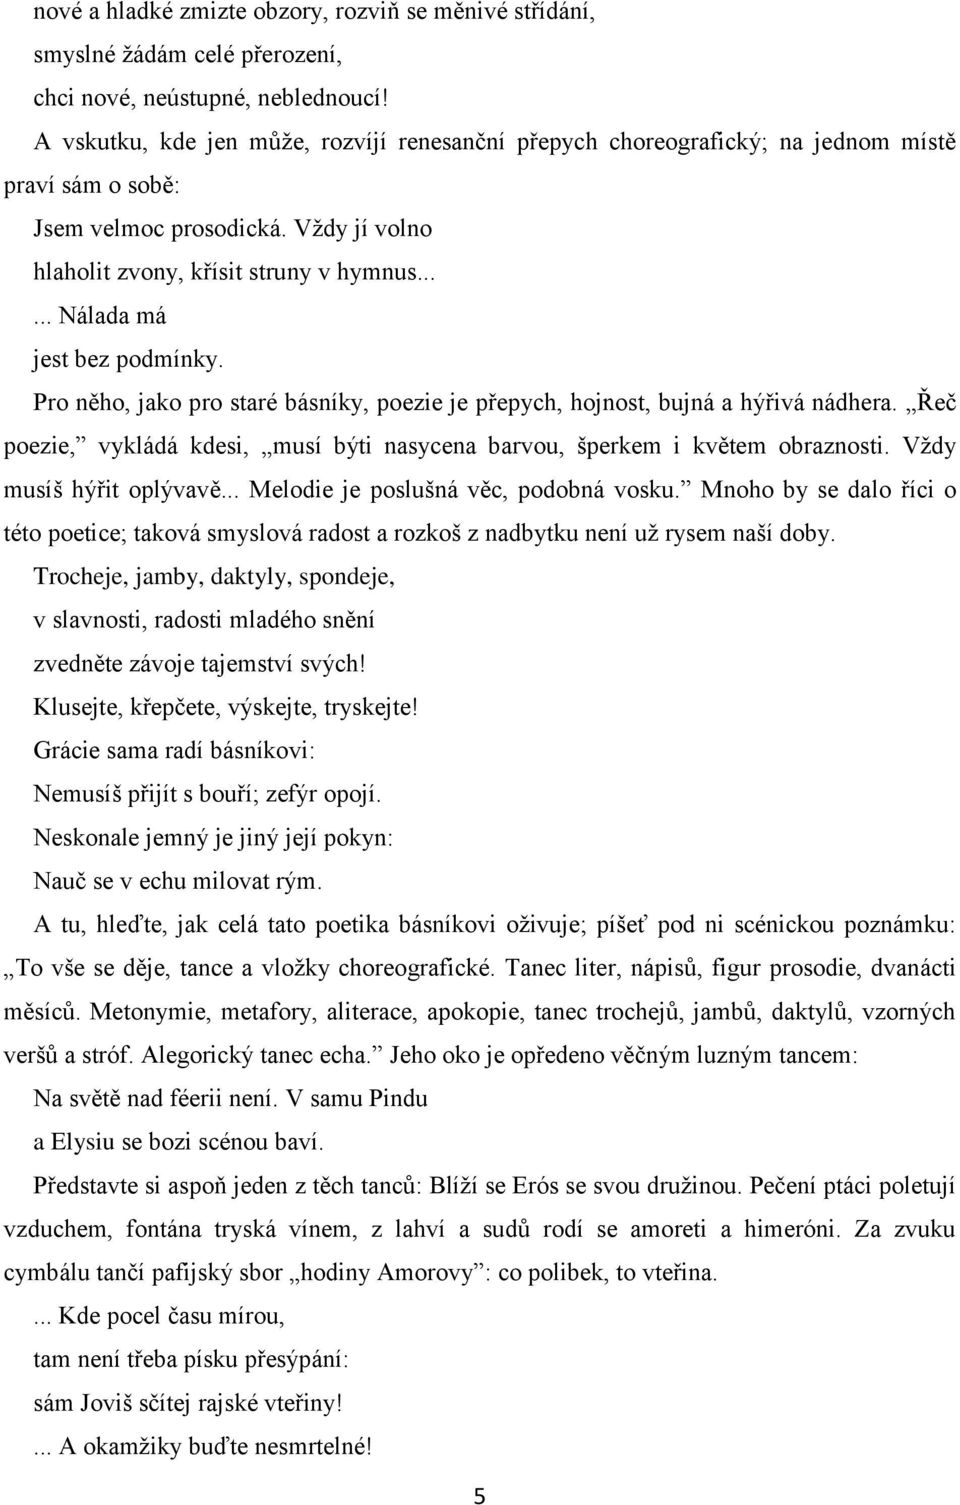 KAREL ČAPEK MARSYAS 1 - PDF Free Download